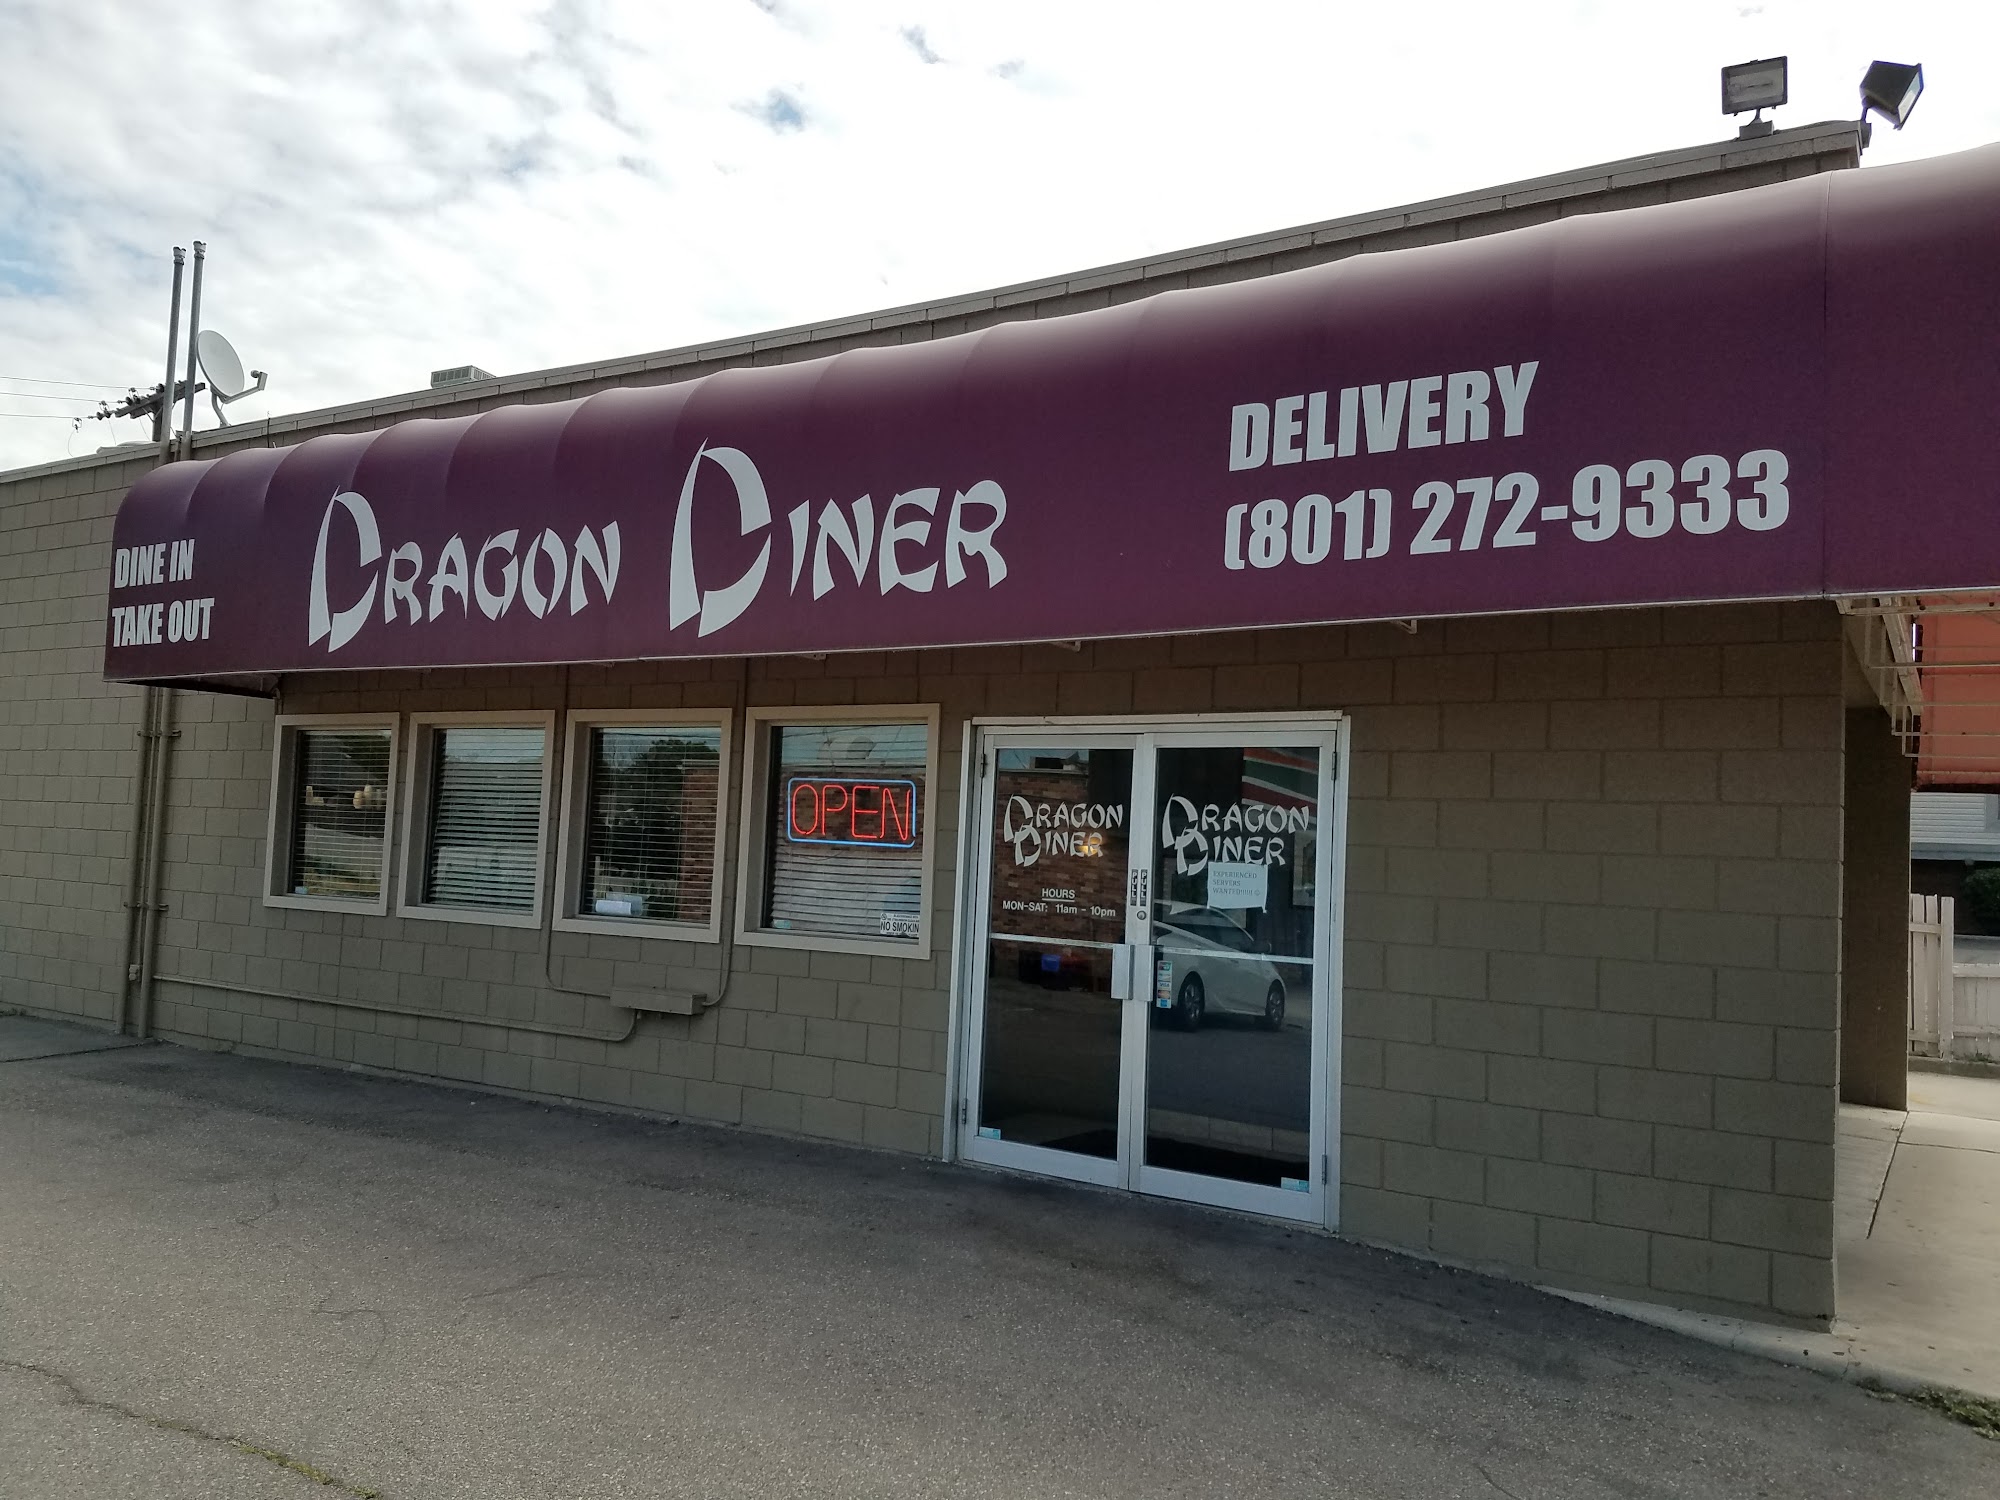 Dragon Diner